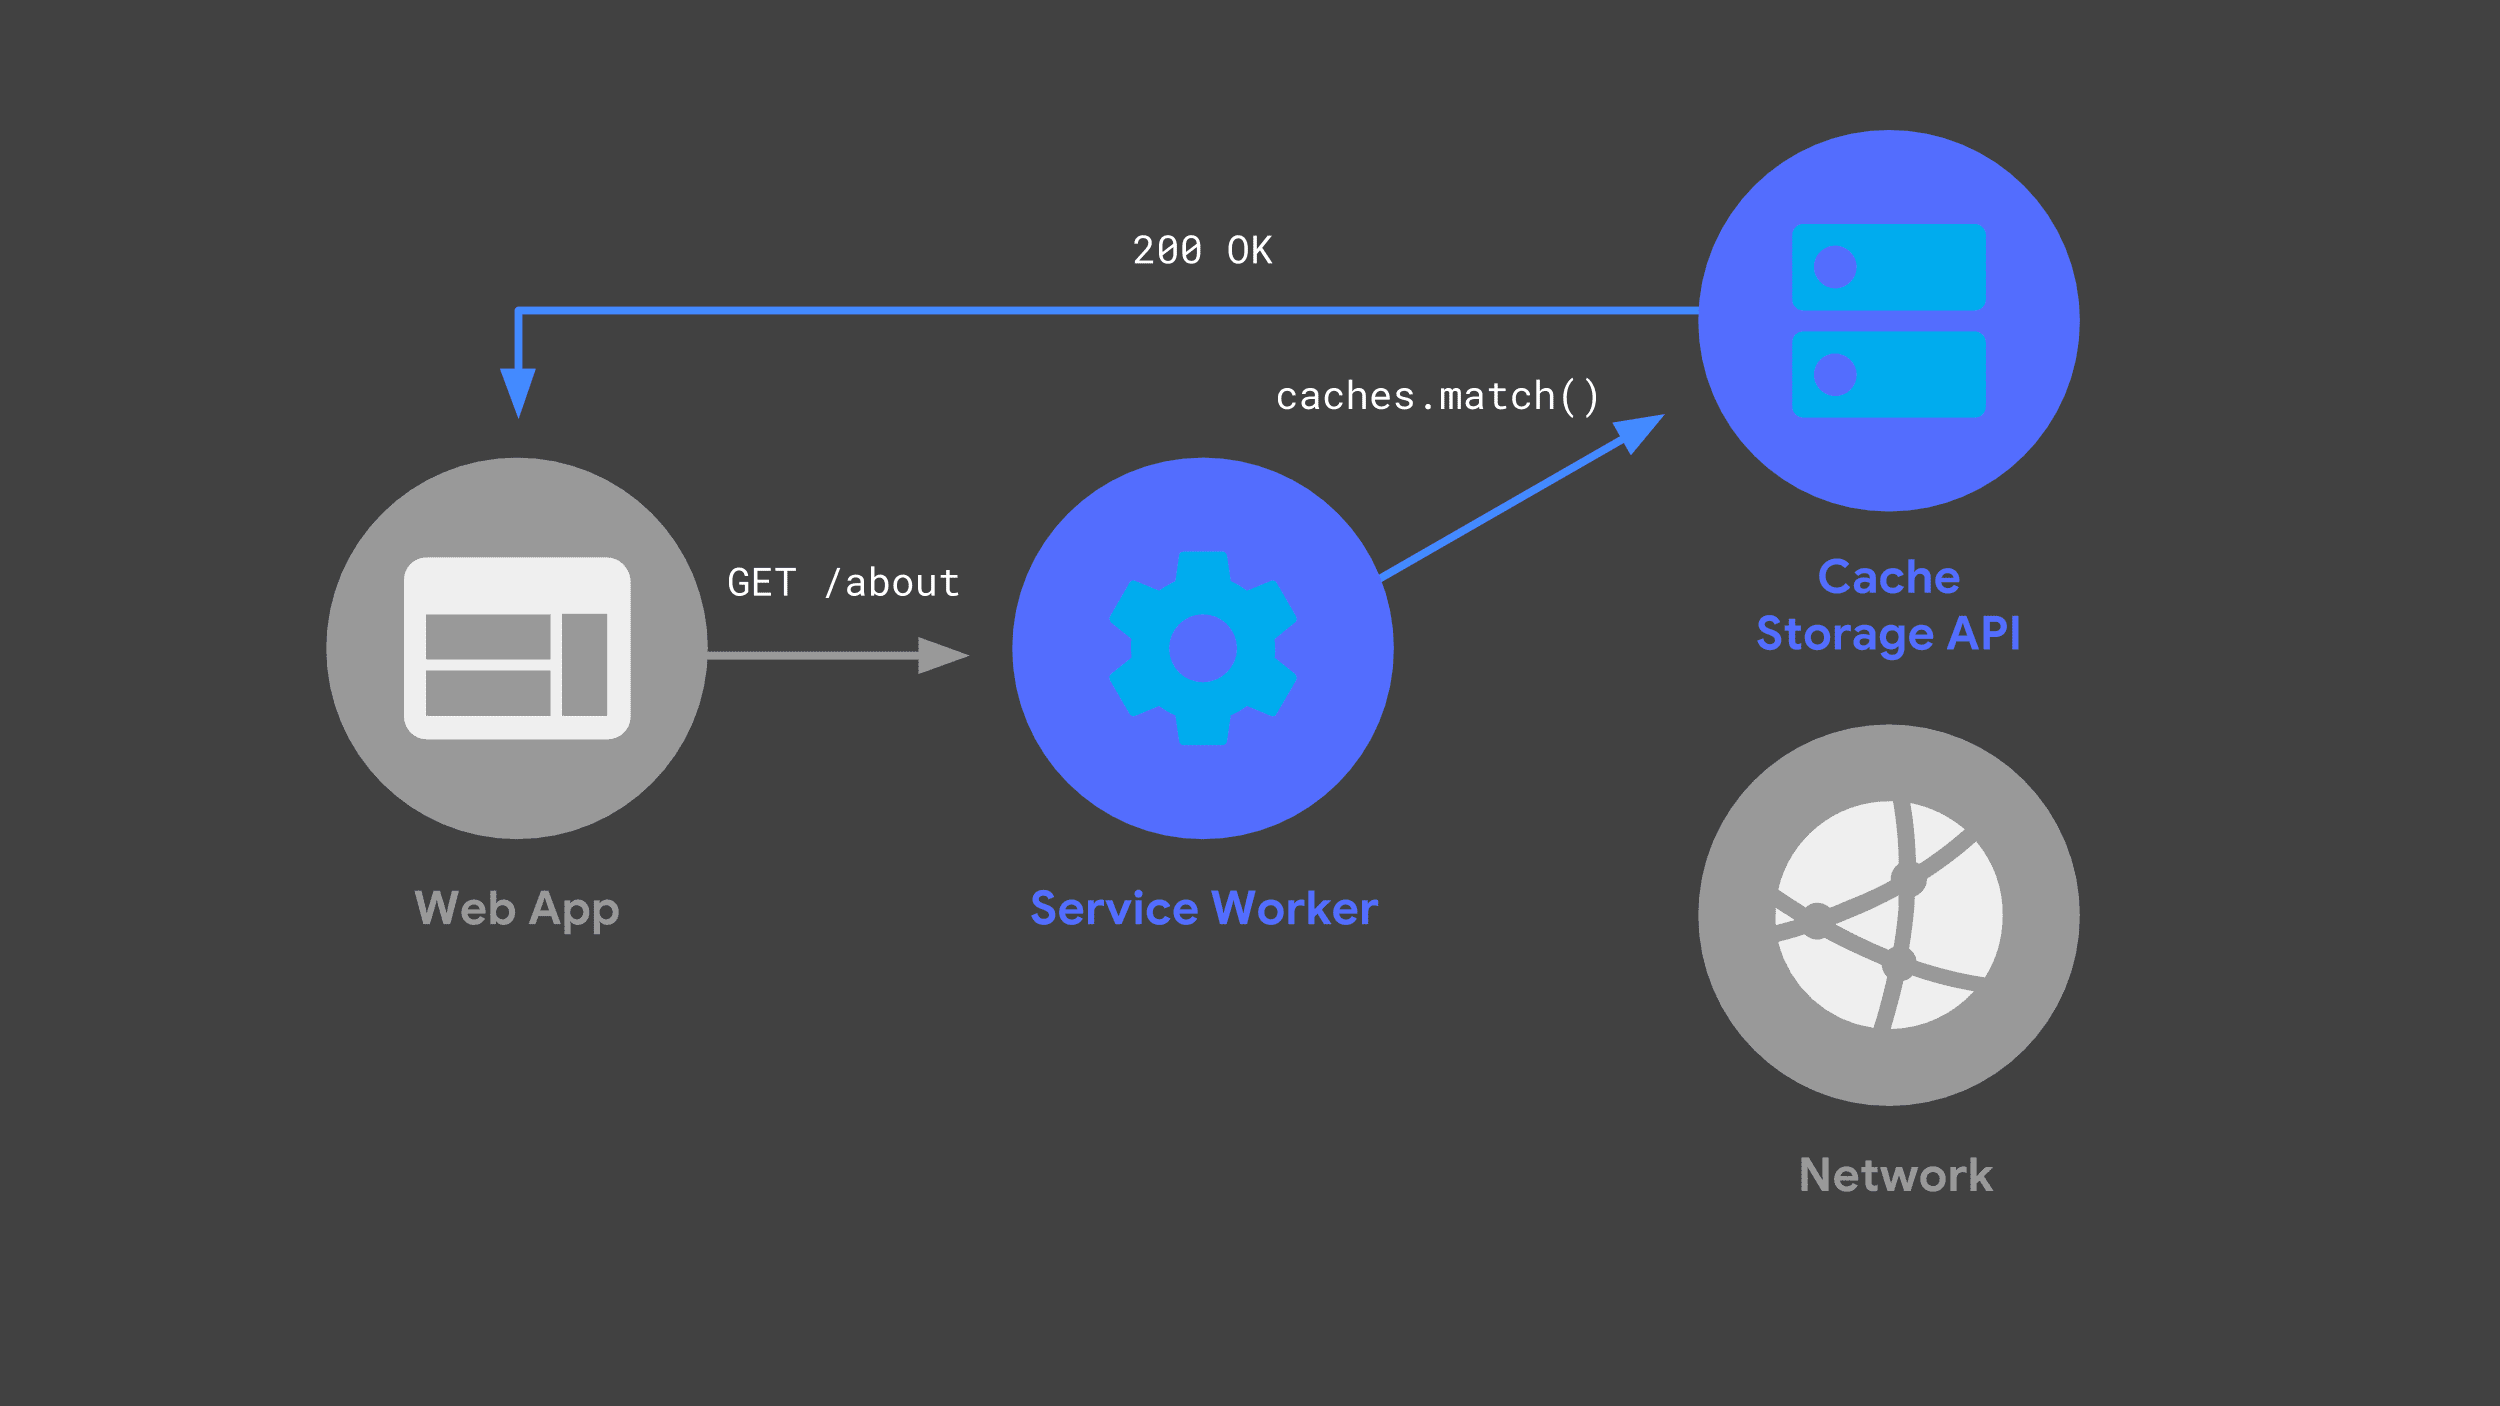 Pekerja layanan yang menggunakan Cache Storage API untuk merespons, melewati jaringan.